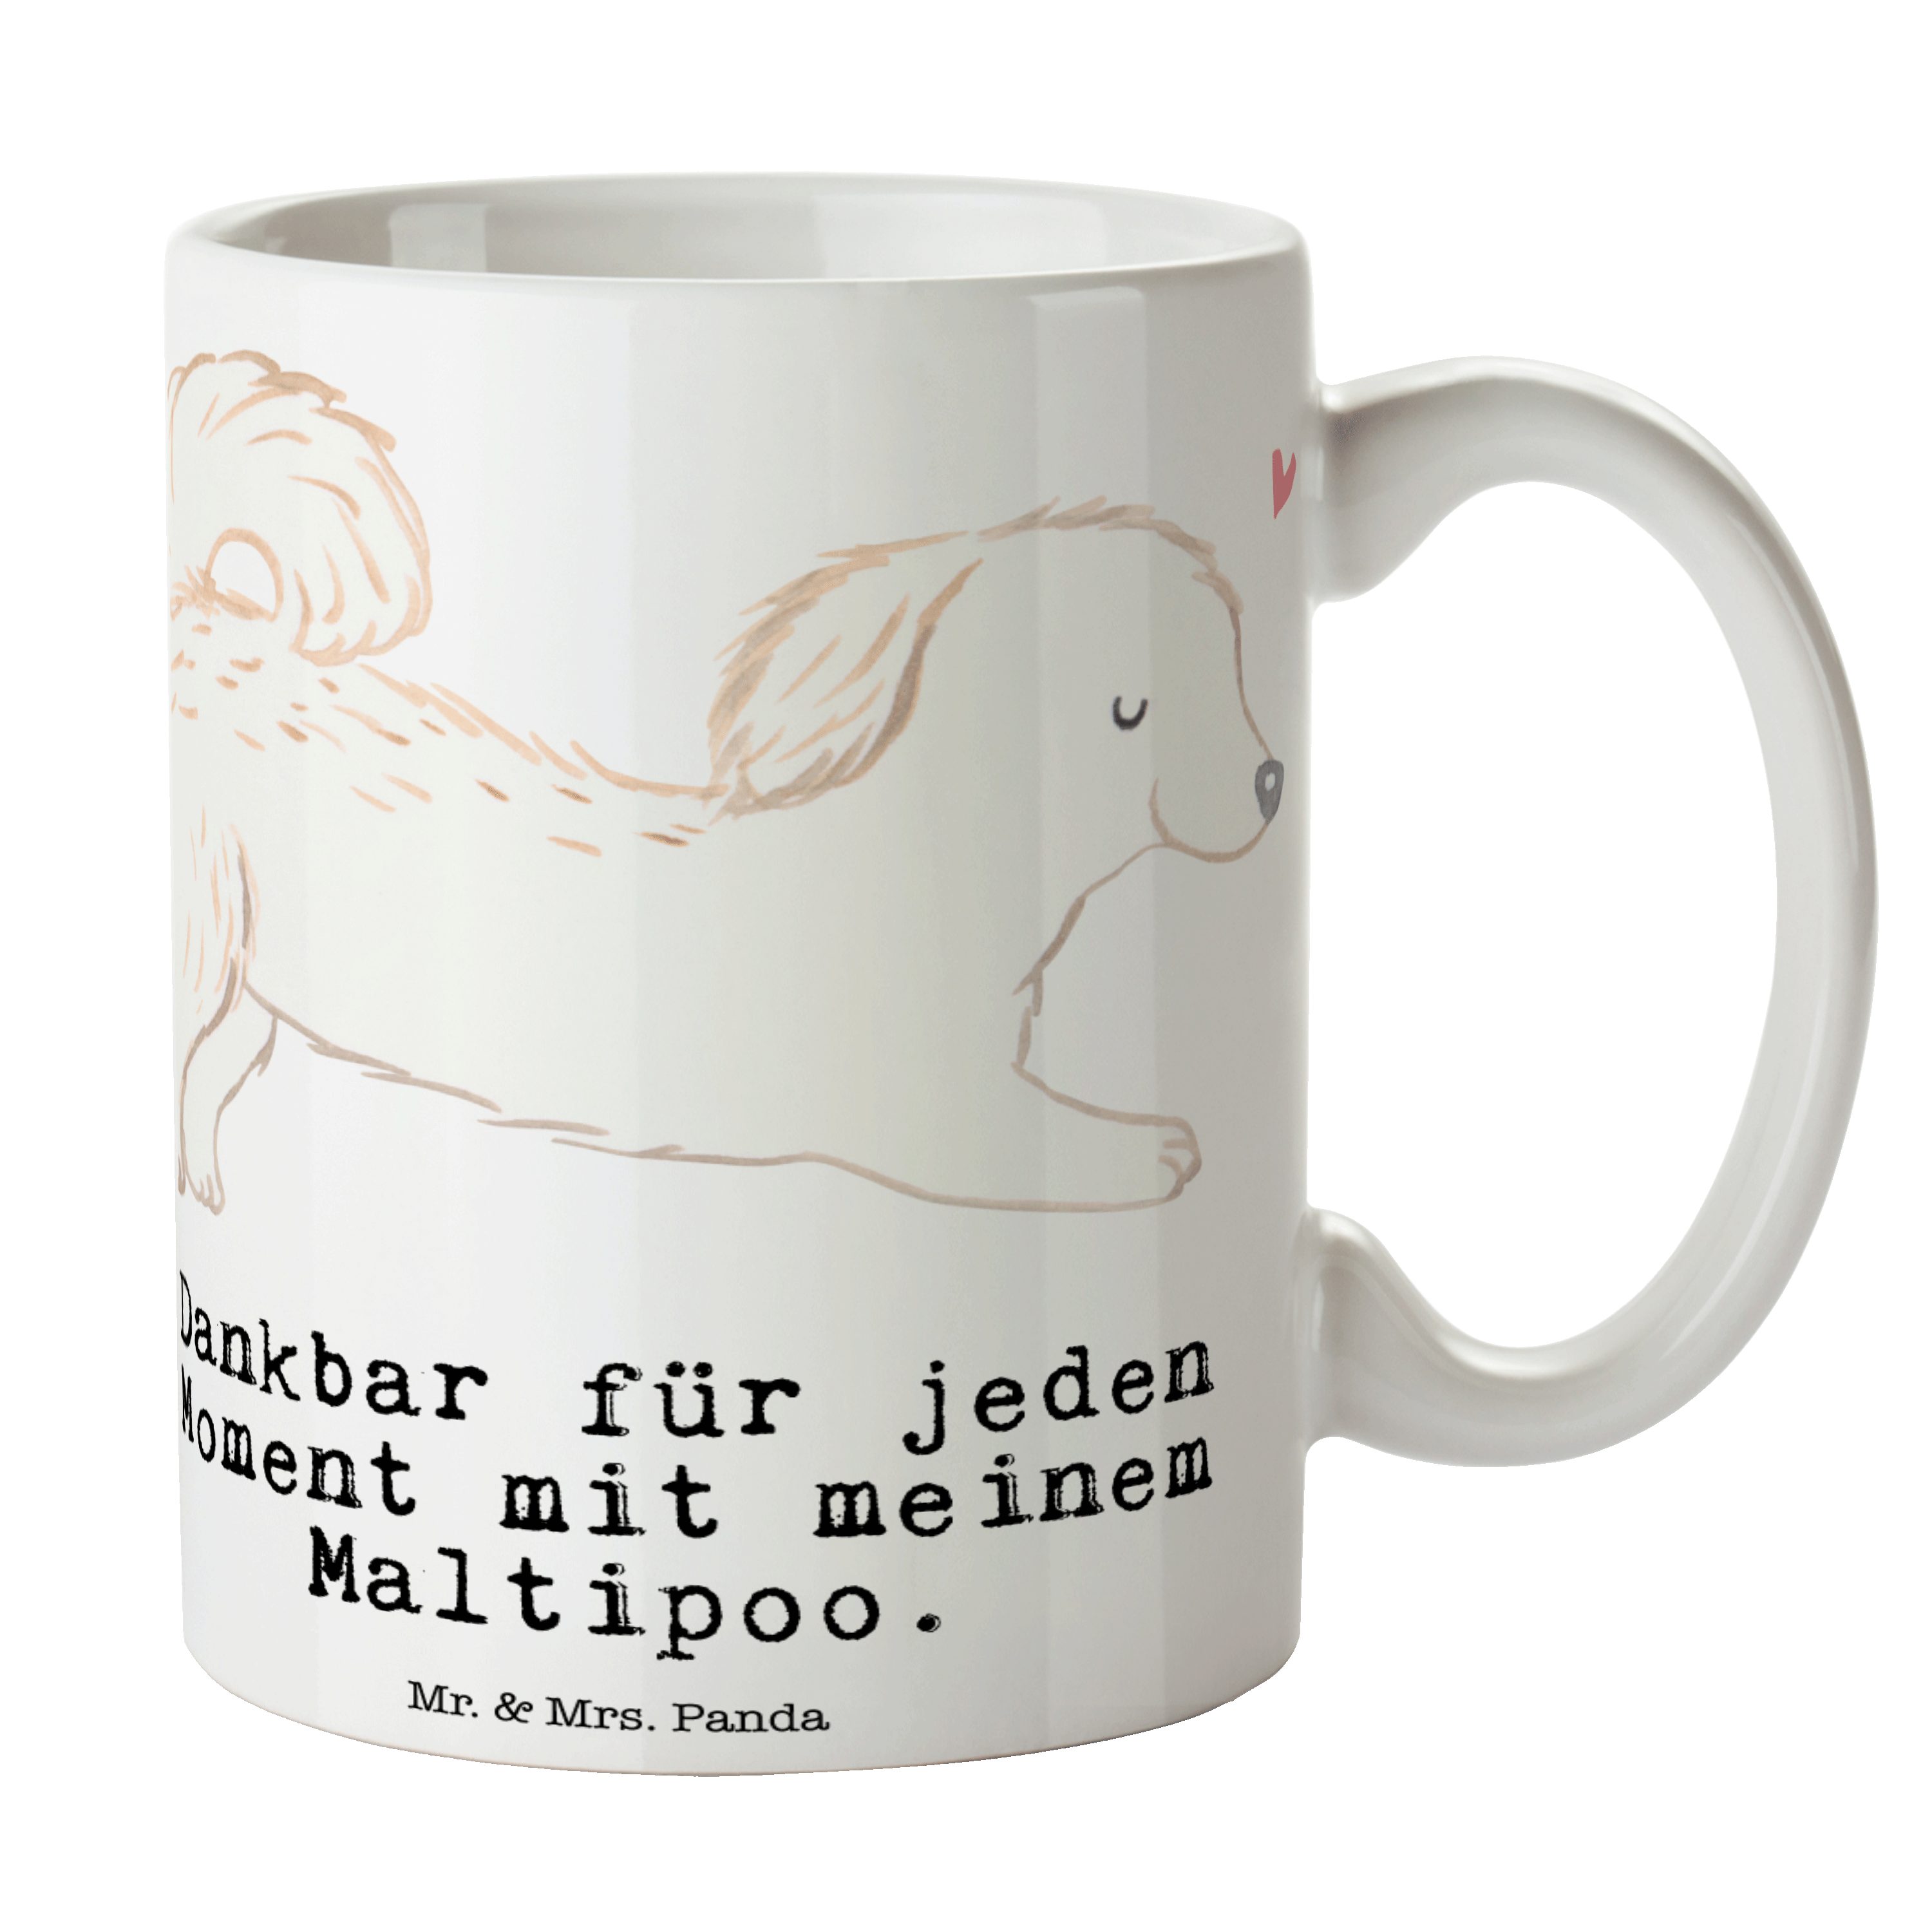 Mr. & Mrs. Panda Tasse Maltipoo Moment - Weiß - Geschenk, Kaffeebecher, Kreuzung, Schenken, Keramik